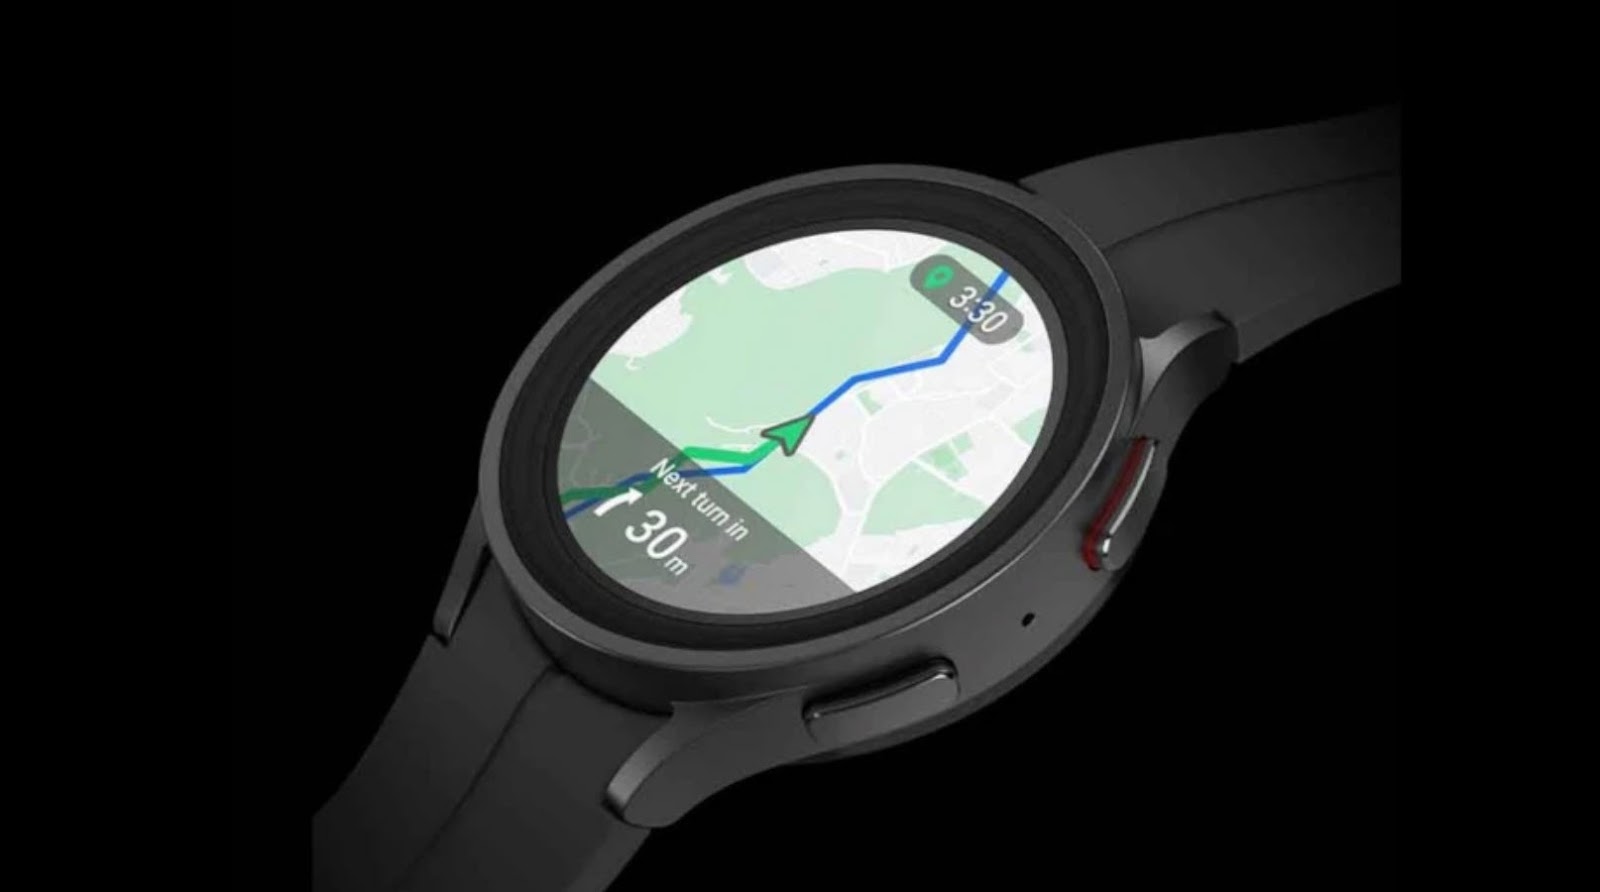 Ceasurile cu Wear OS vor oferi navigare prin Google Maps chiar şi fără un telefon prin preajmă 